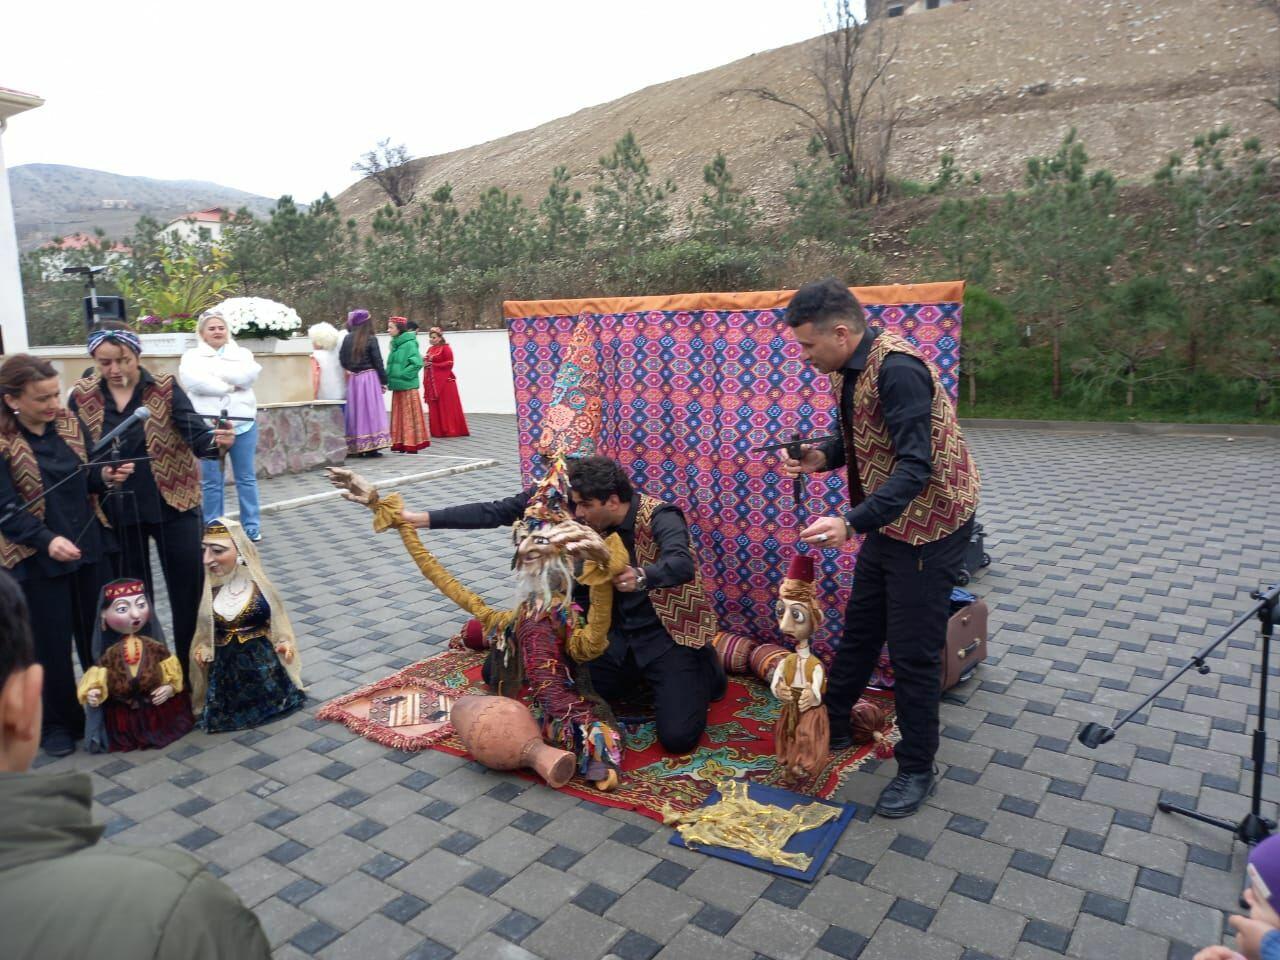 Коллектив Кукольного театра выступил со спектаклем в селе Талыш